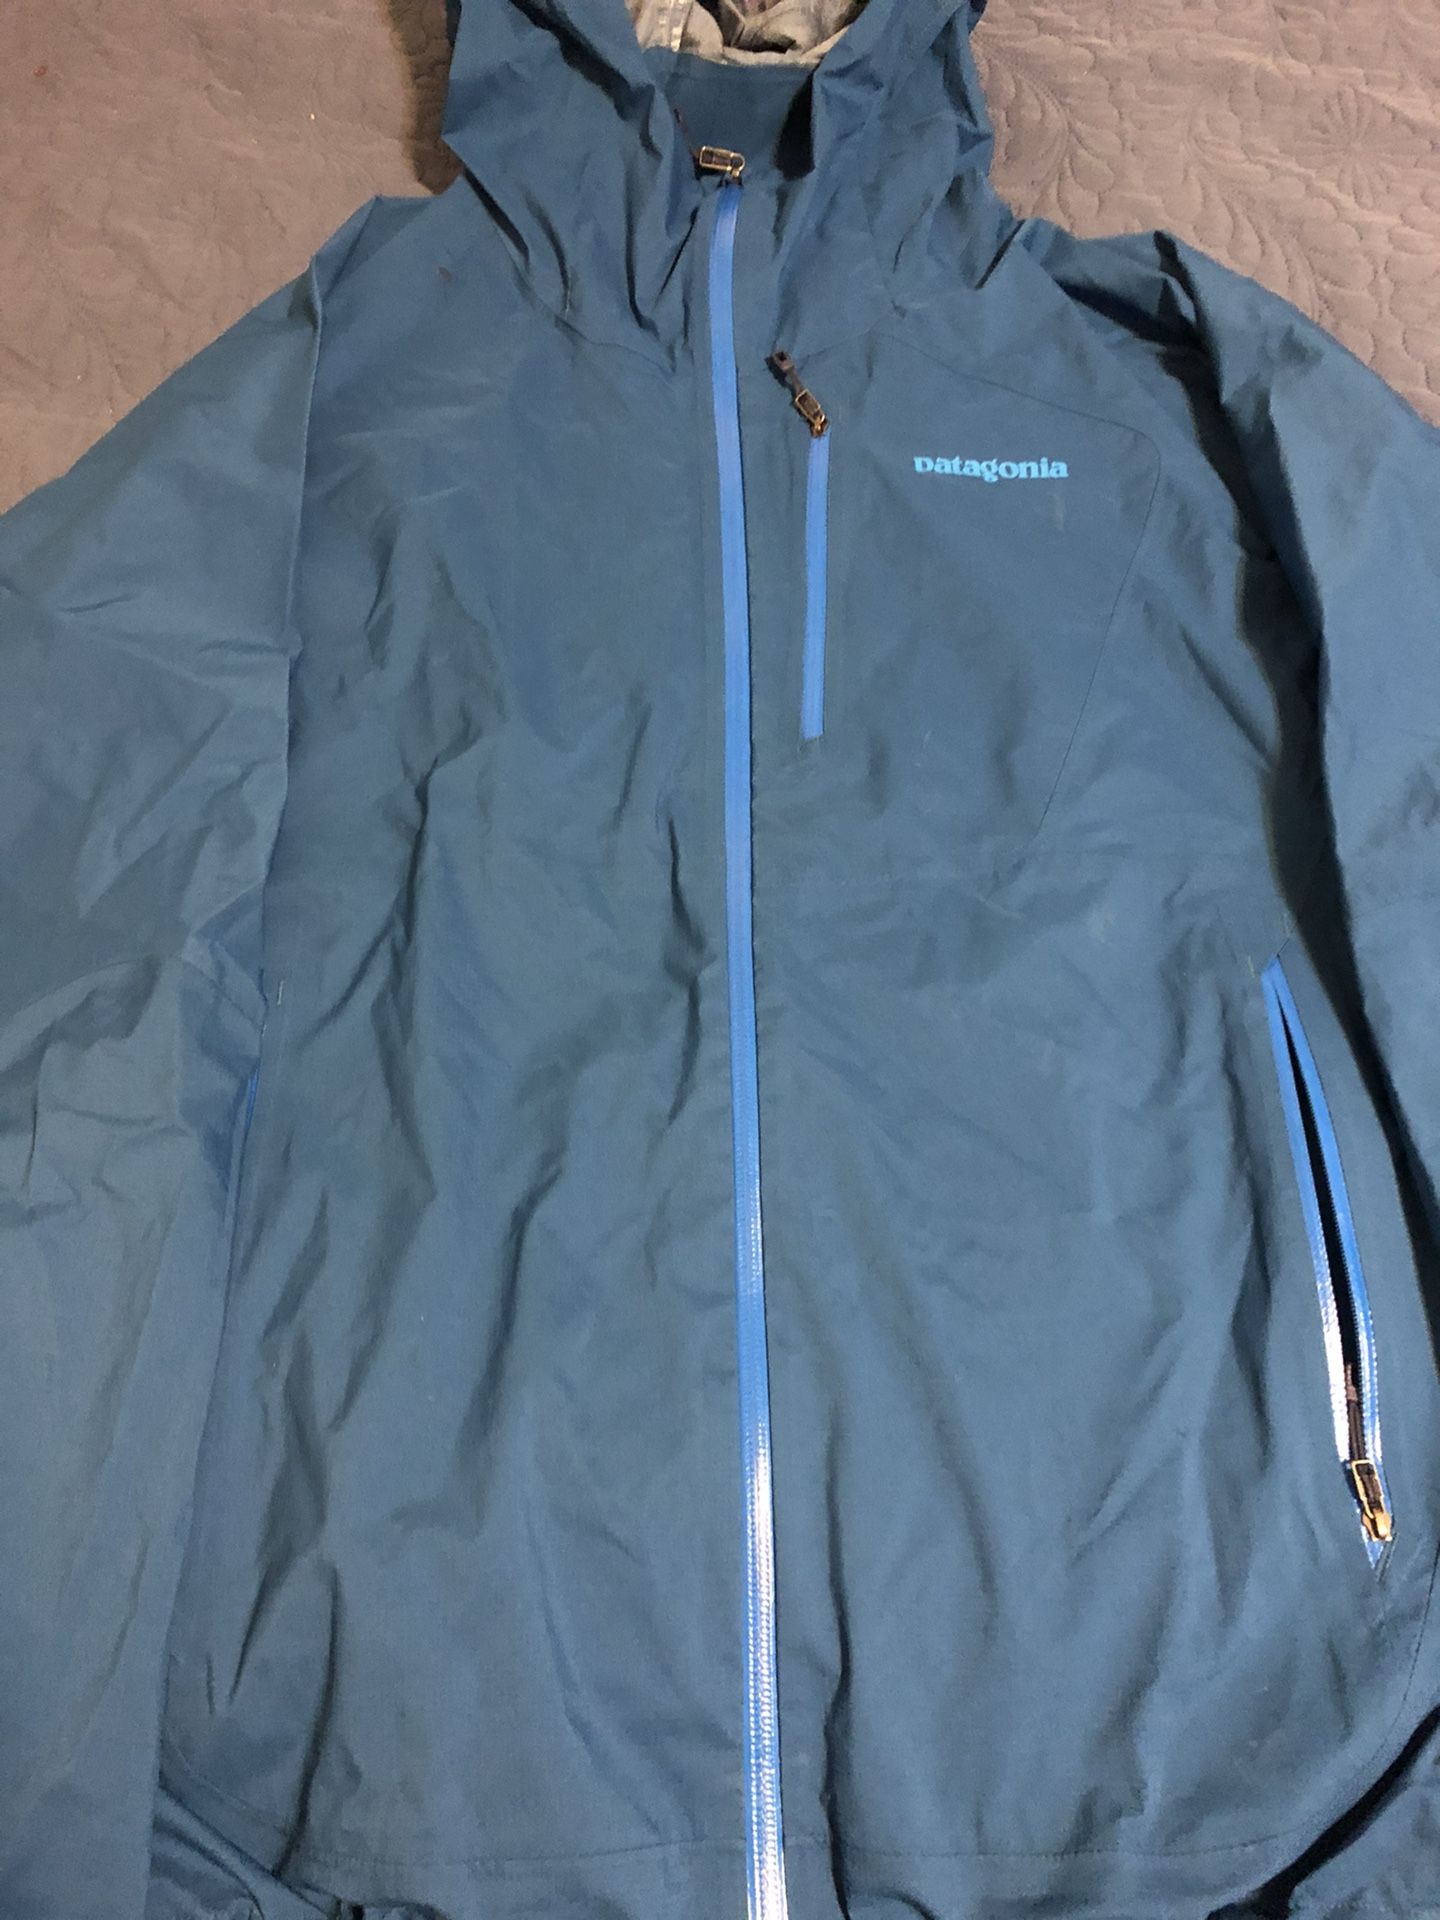 Patagonia jacket size xl women